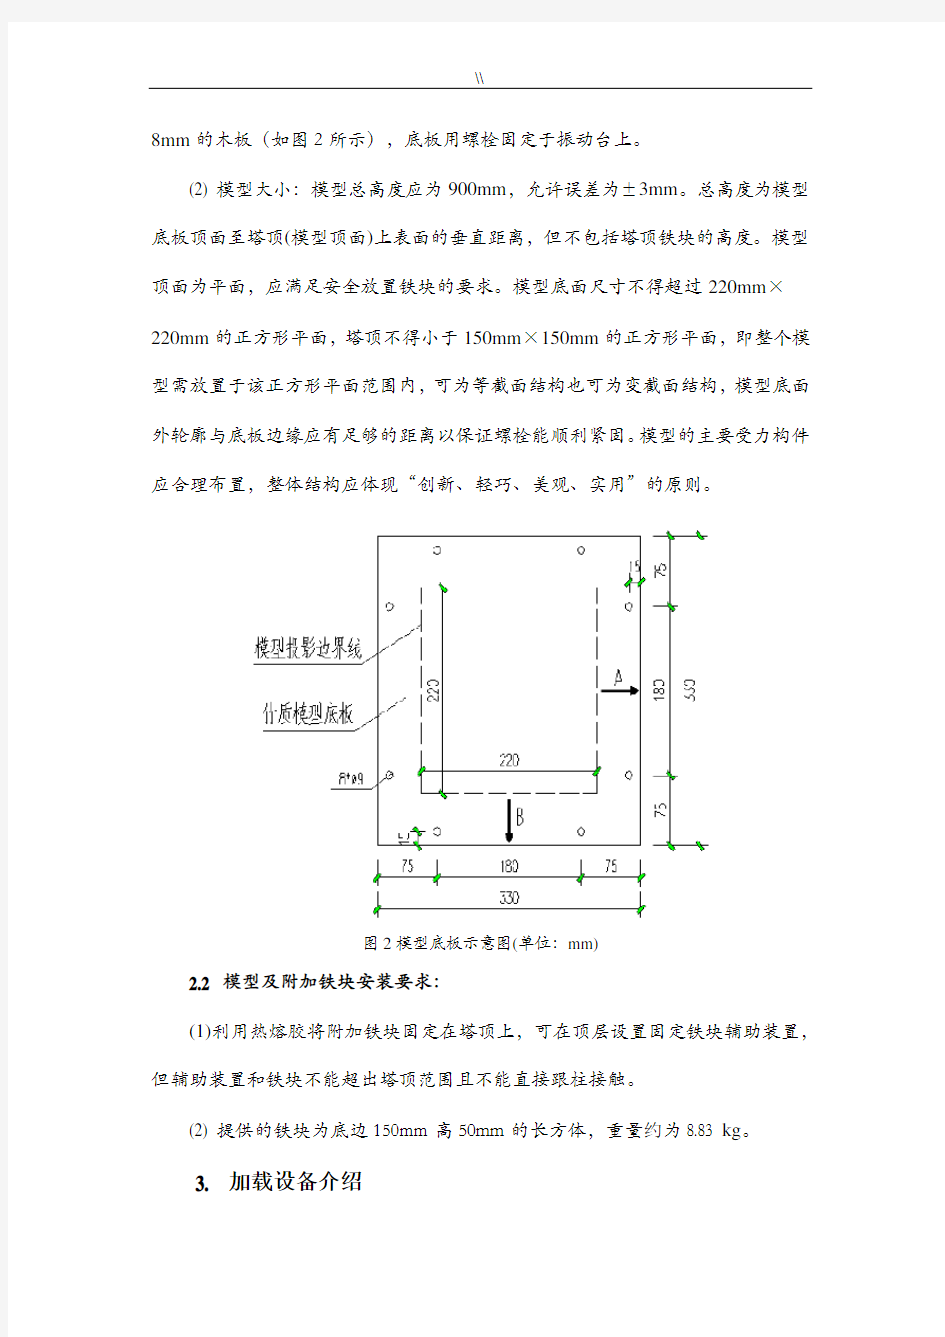 长安大学2016年度结构设计大赛赛题-竹质塔结构